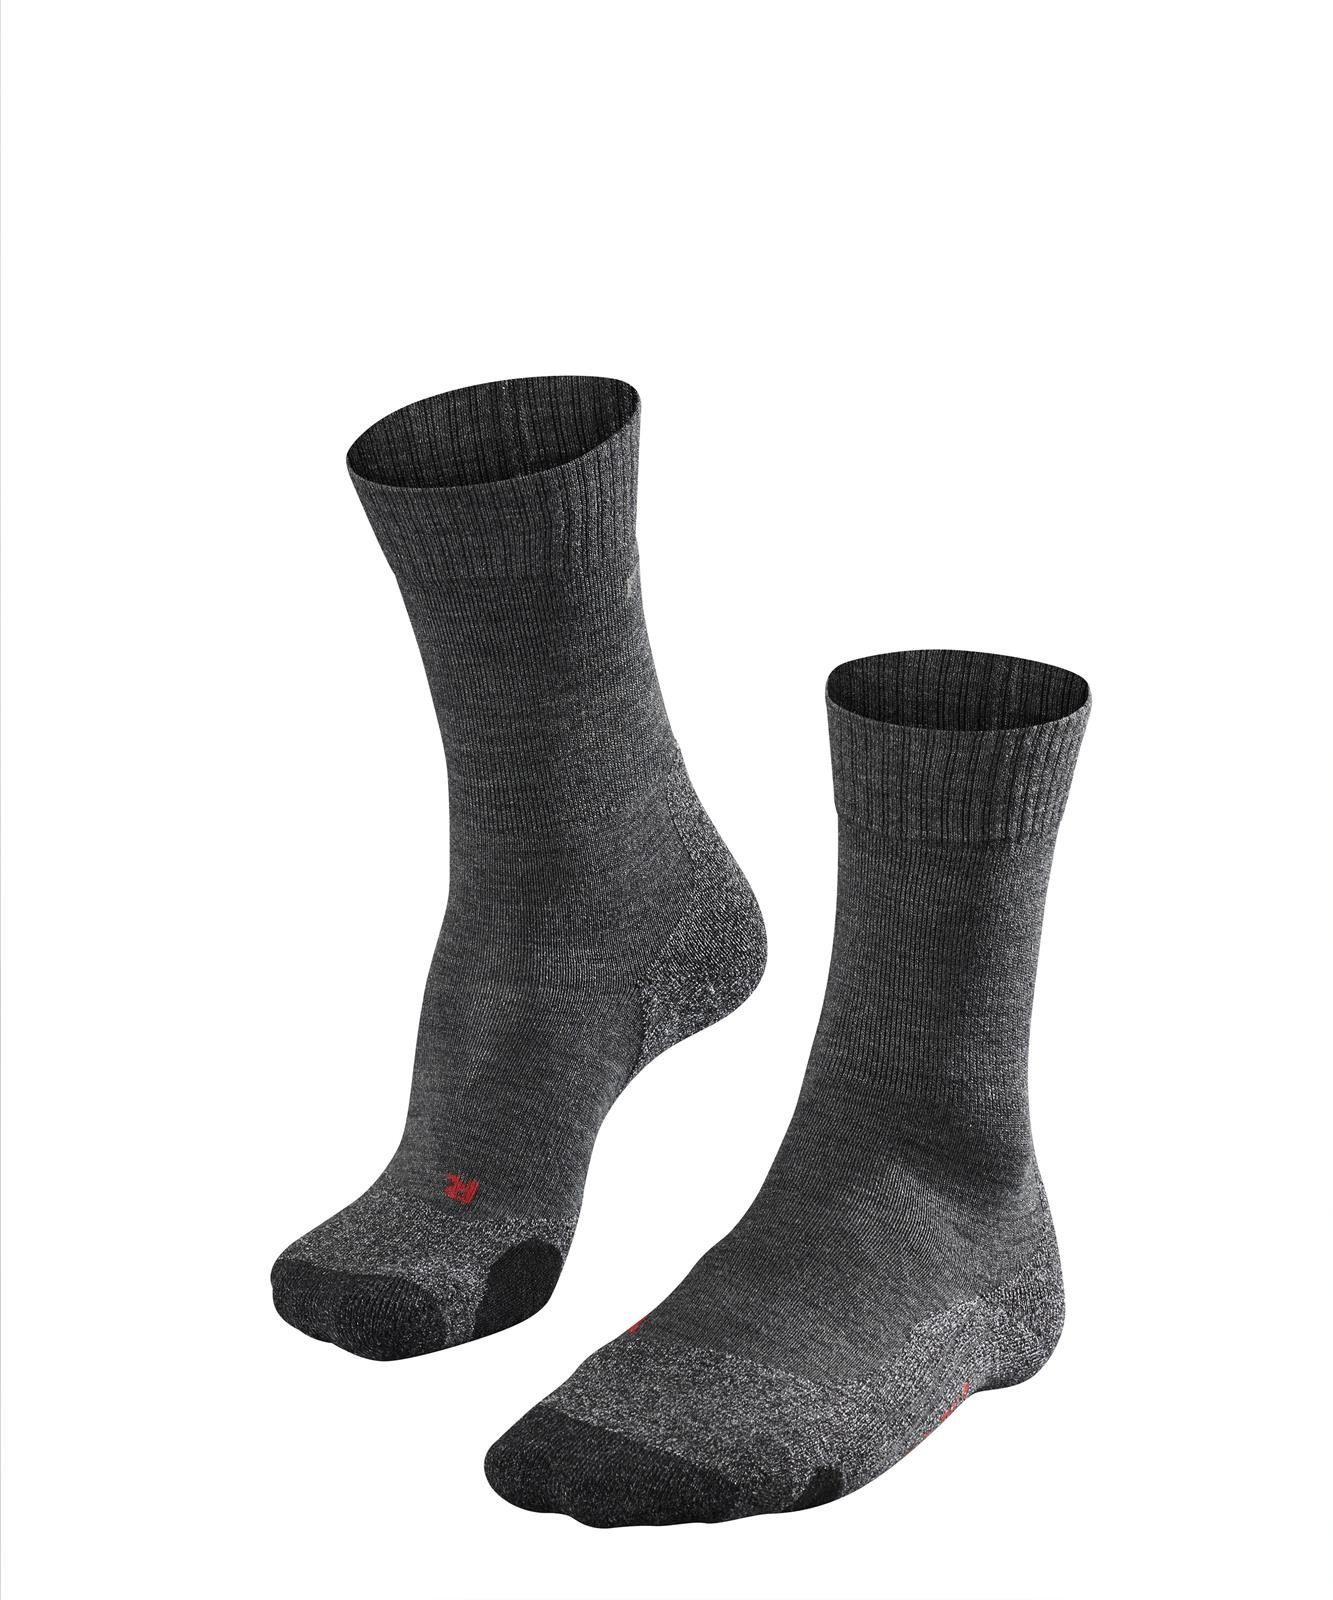 FALKE Sportsocken Herren Socken - Trekking Socken TK2, Polsterung Anthrazit (3180) | Sportsocken